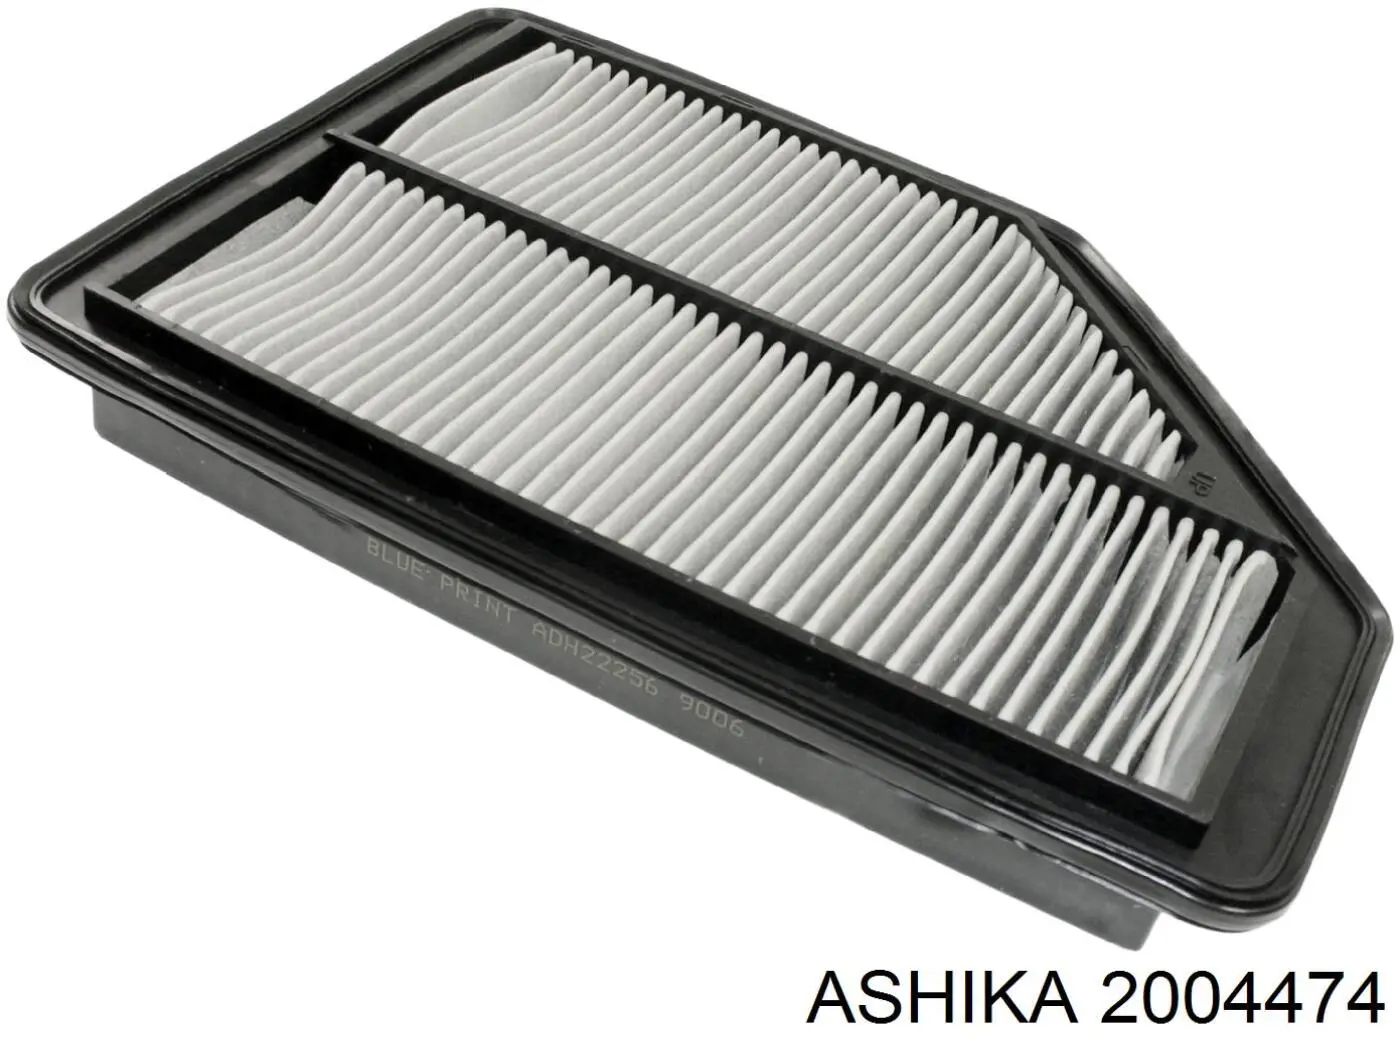 2004474 Ashika воздушный фильтр